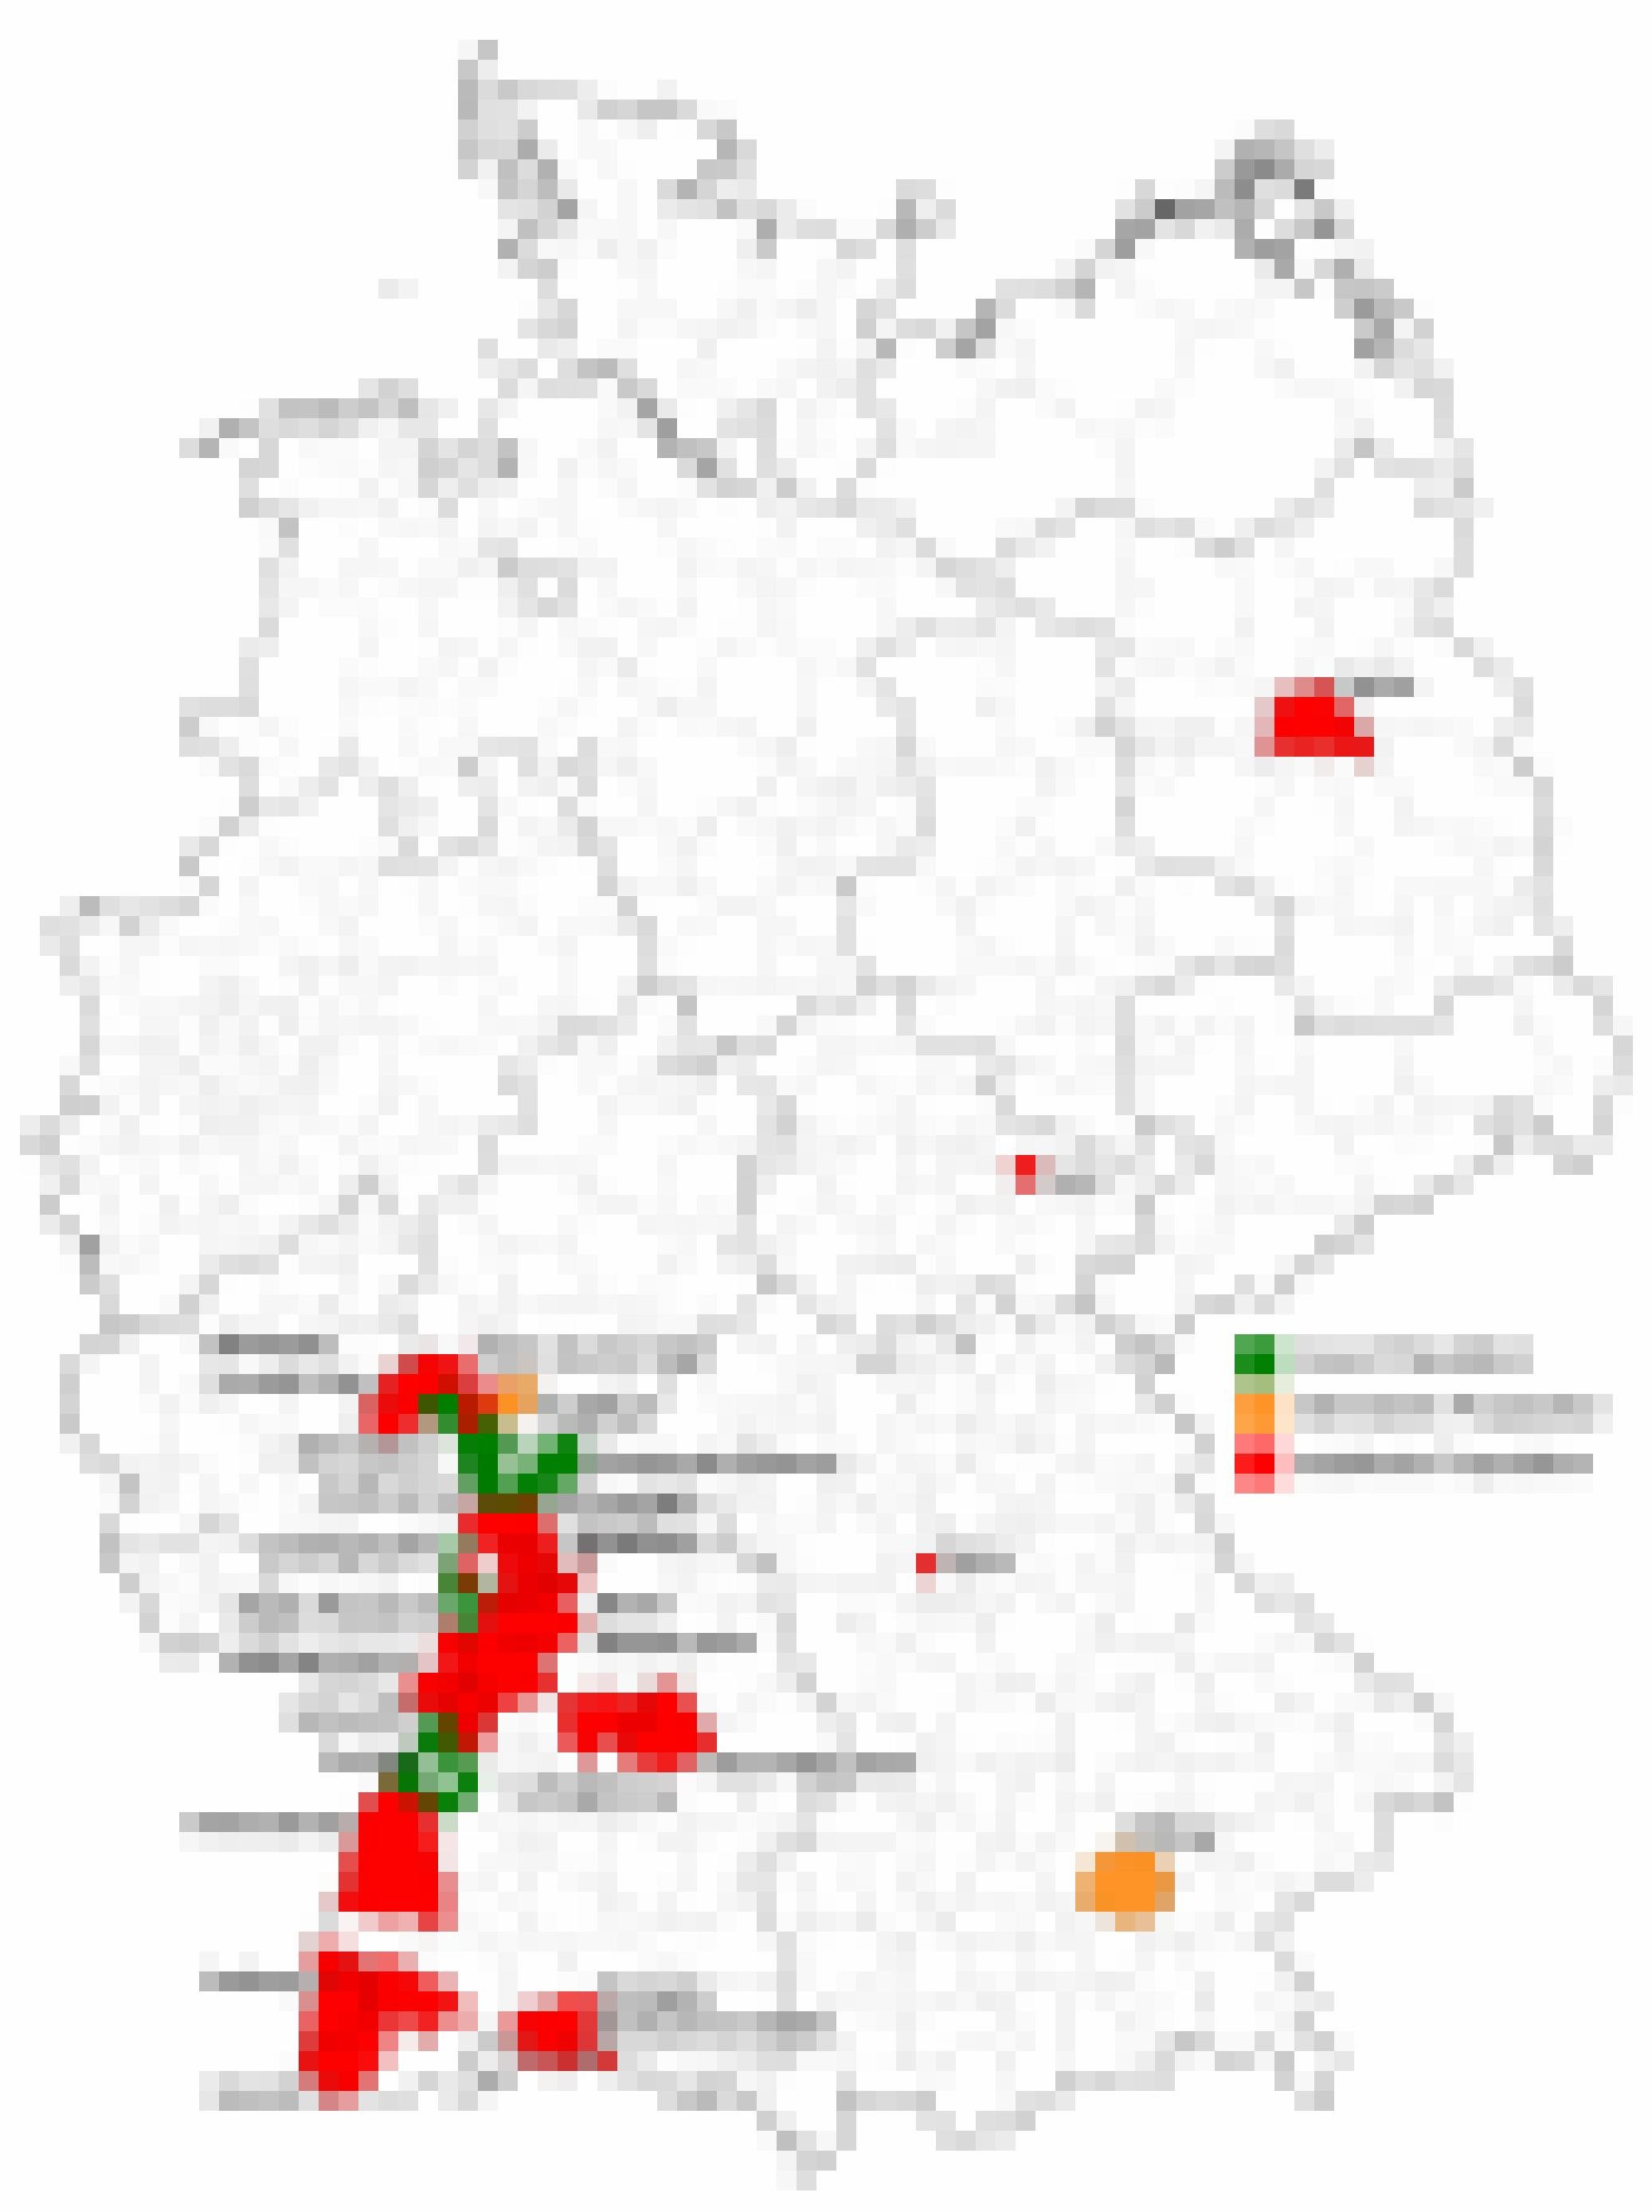 Vorkommen der Asiatischen Tigermücke in Deutschland, Stand 15.08.2019